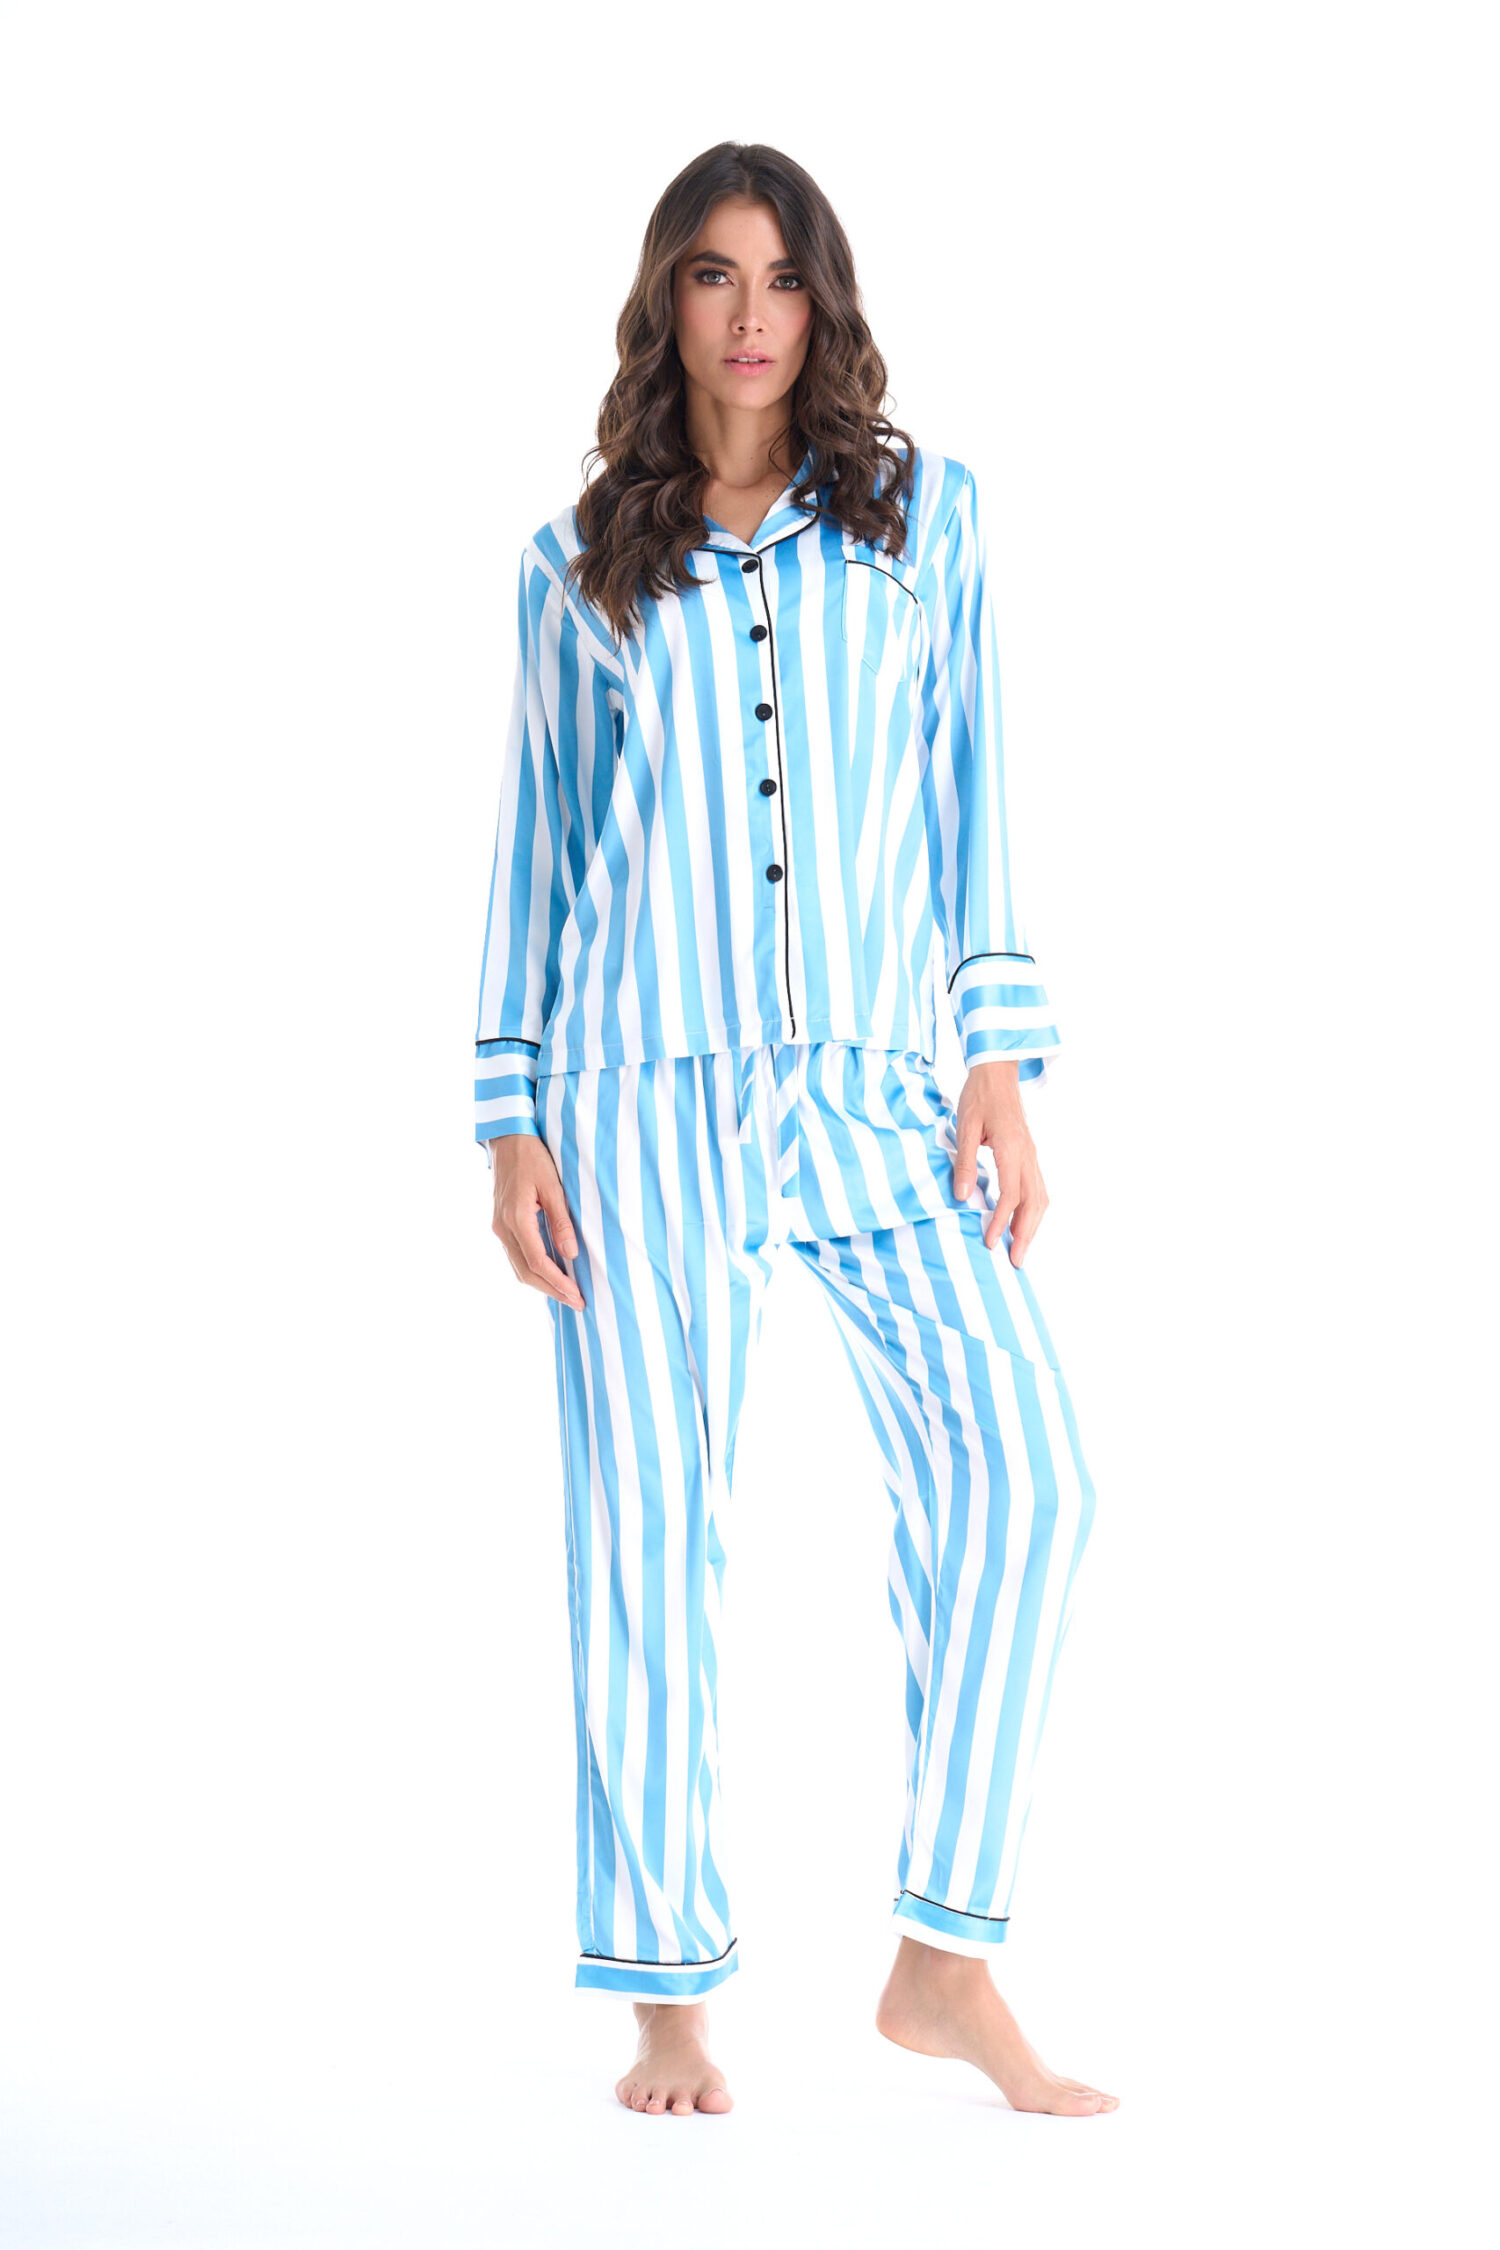 Imagen del producto: Conjunto pantalón lineas azules y blancas